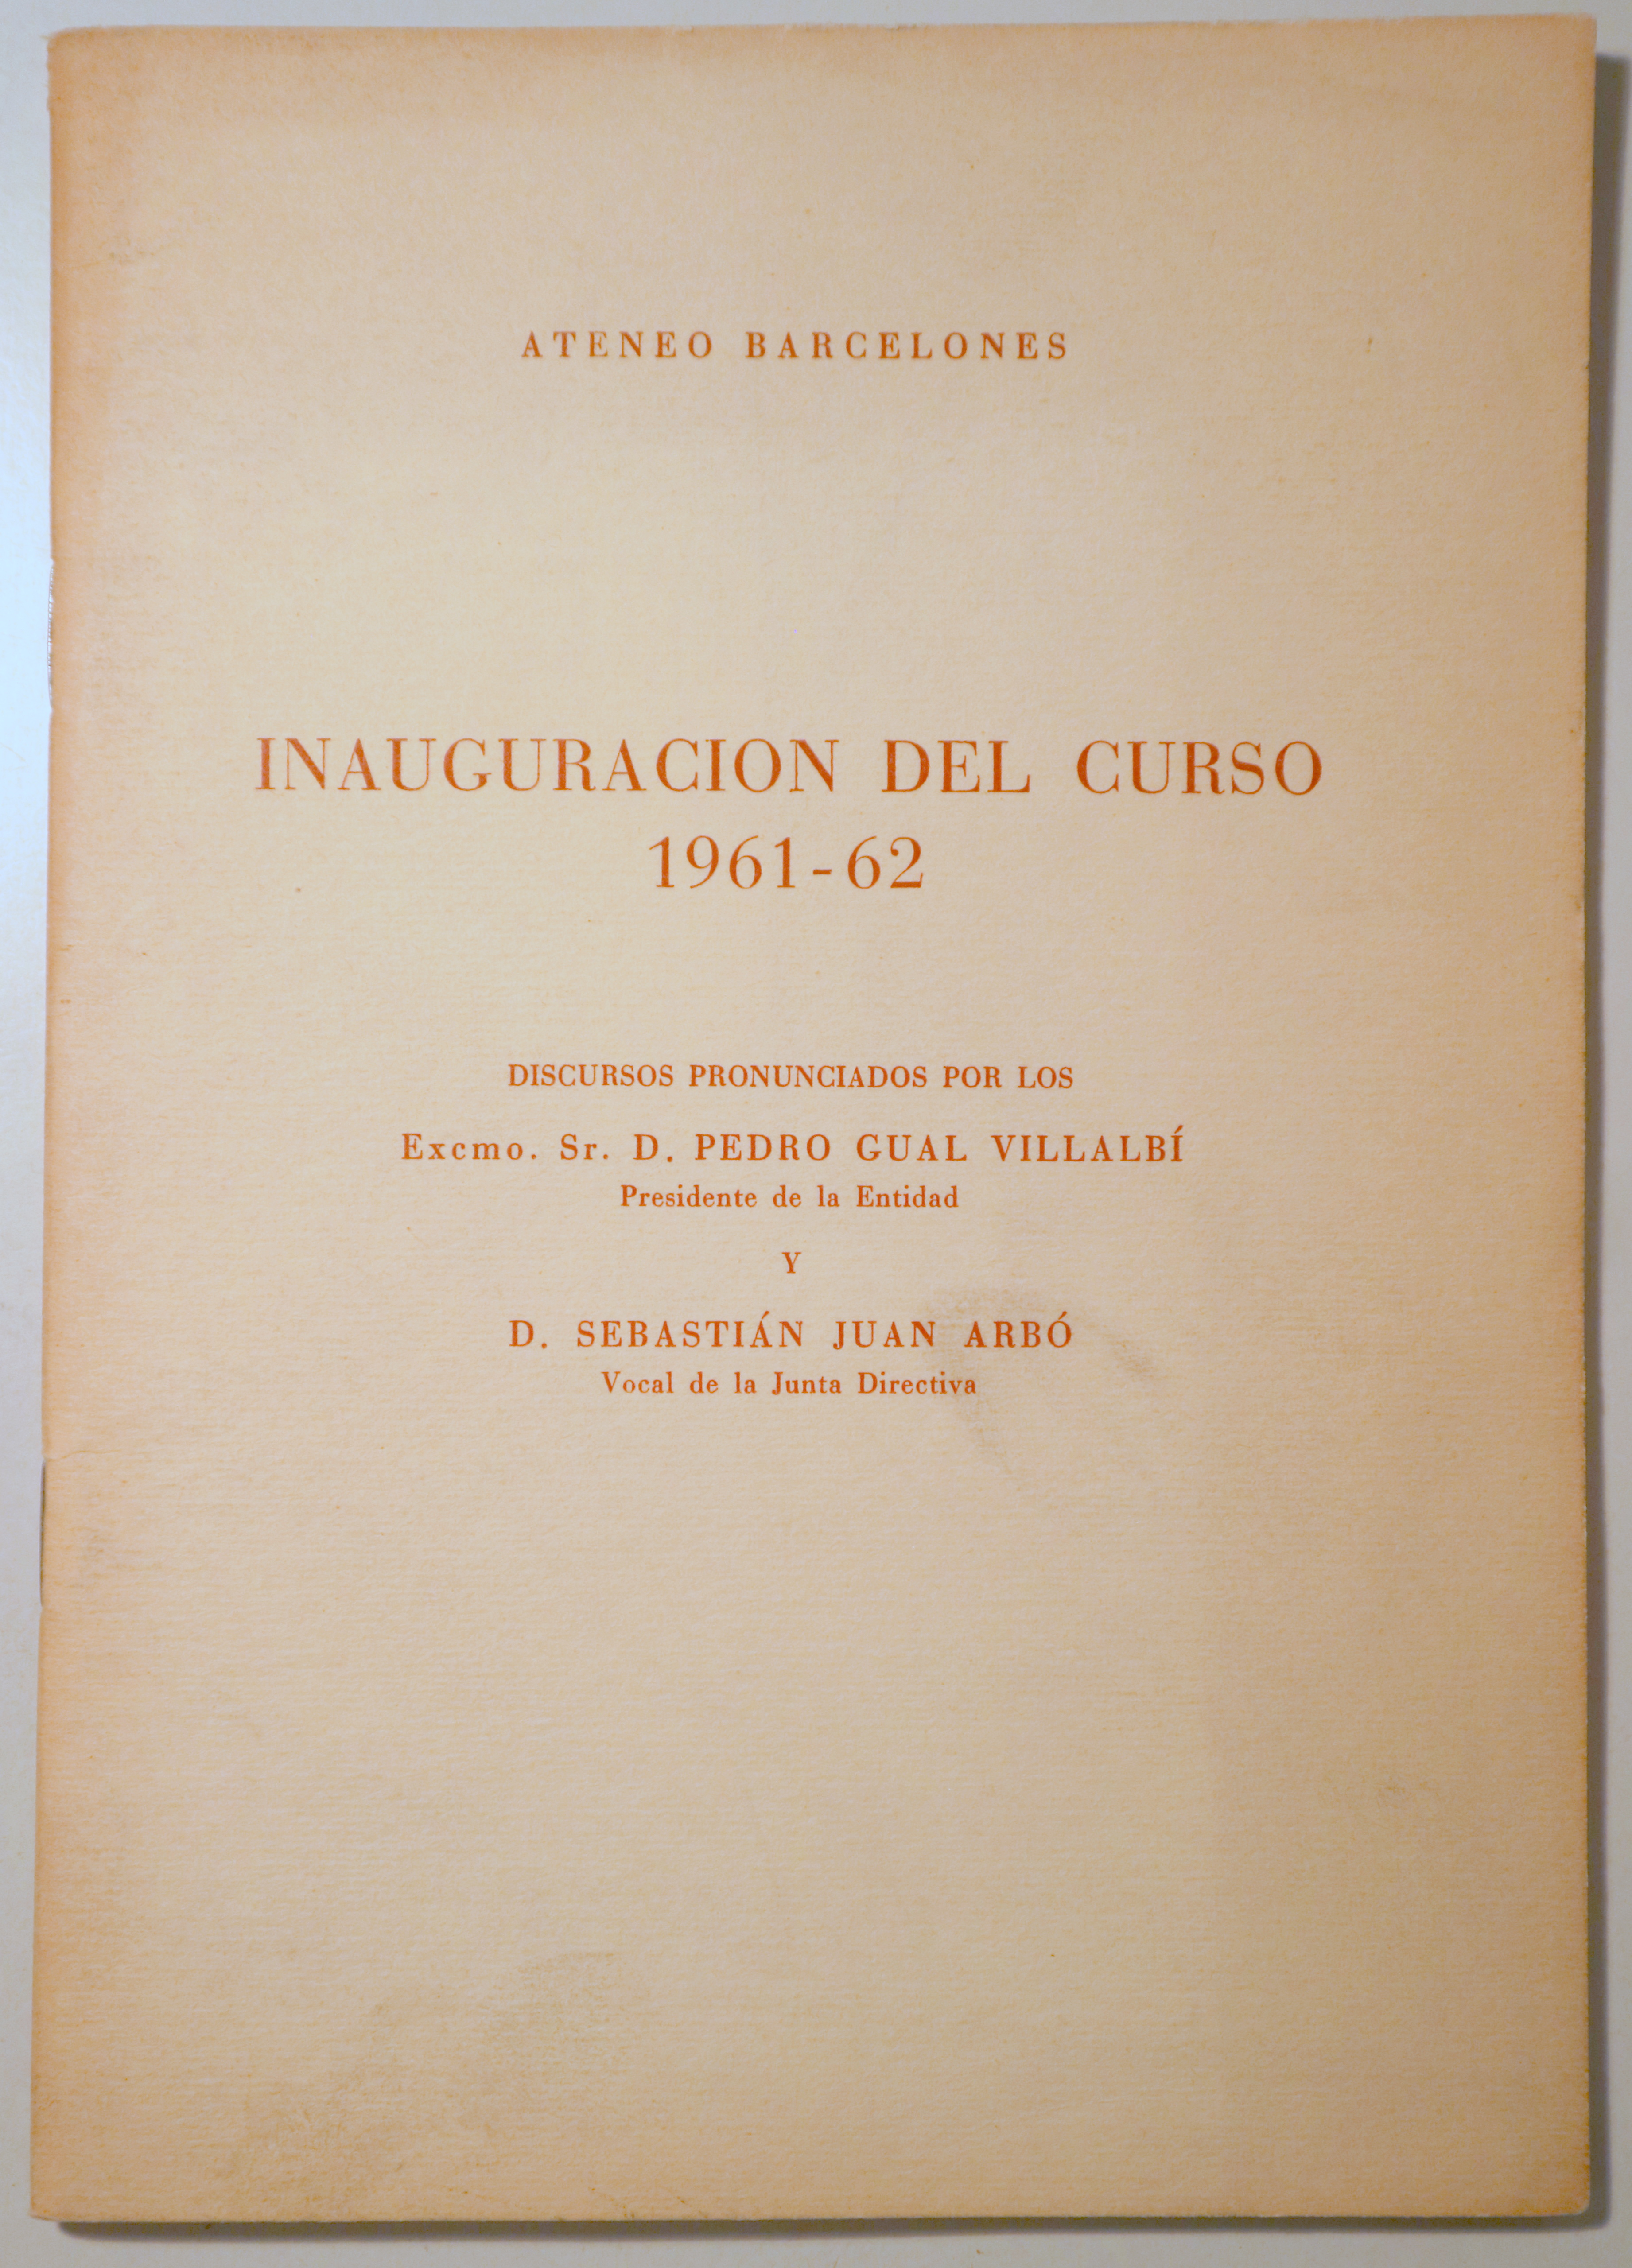 ATENEO BARCELONÉS. INAUGURACIÓN DEL CURSO 1961-62 - Barcelona 1962